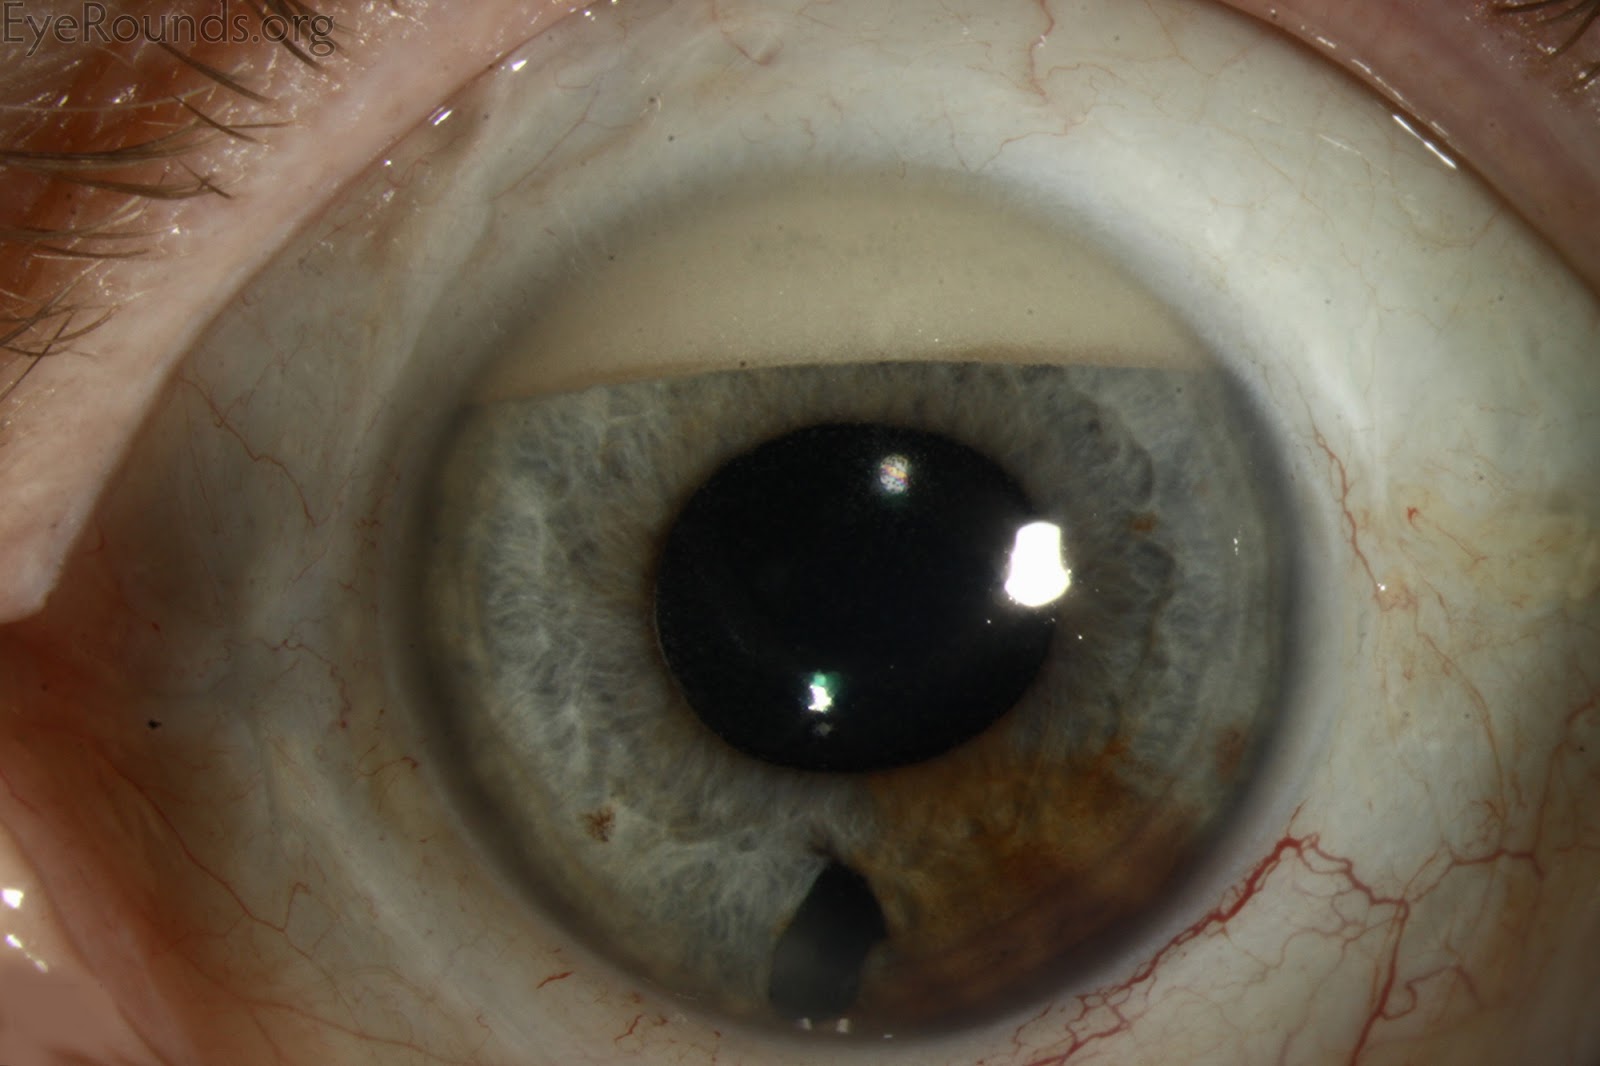 inflamasi mata (hipopion)